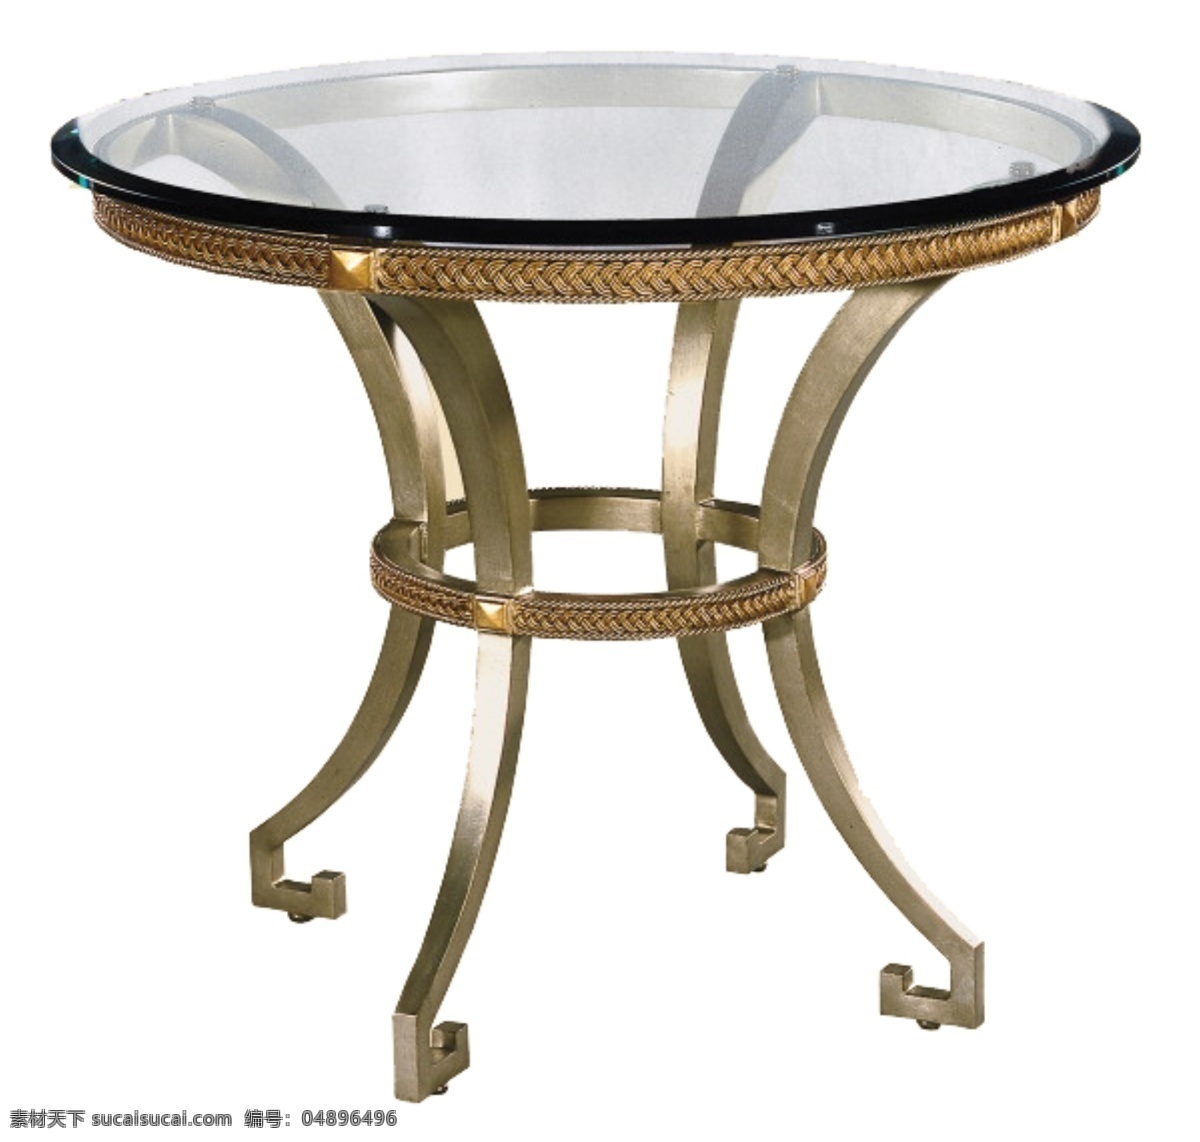 简约 玻璃 台面 圆形 桌子 png素材1 玻璃桌子 复古素材 圆形桌子 圆桌免抠